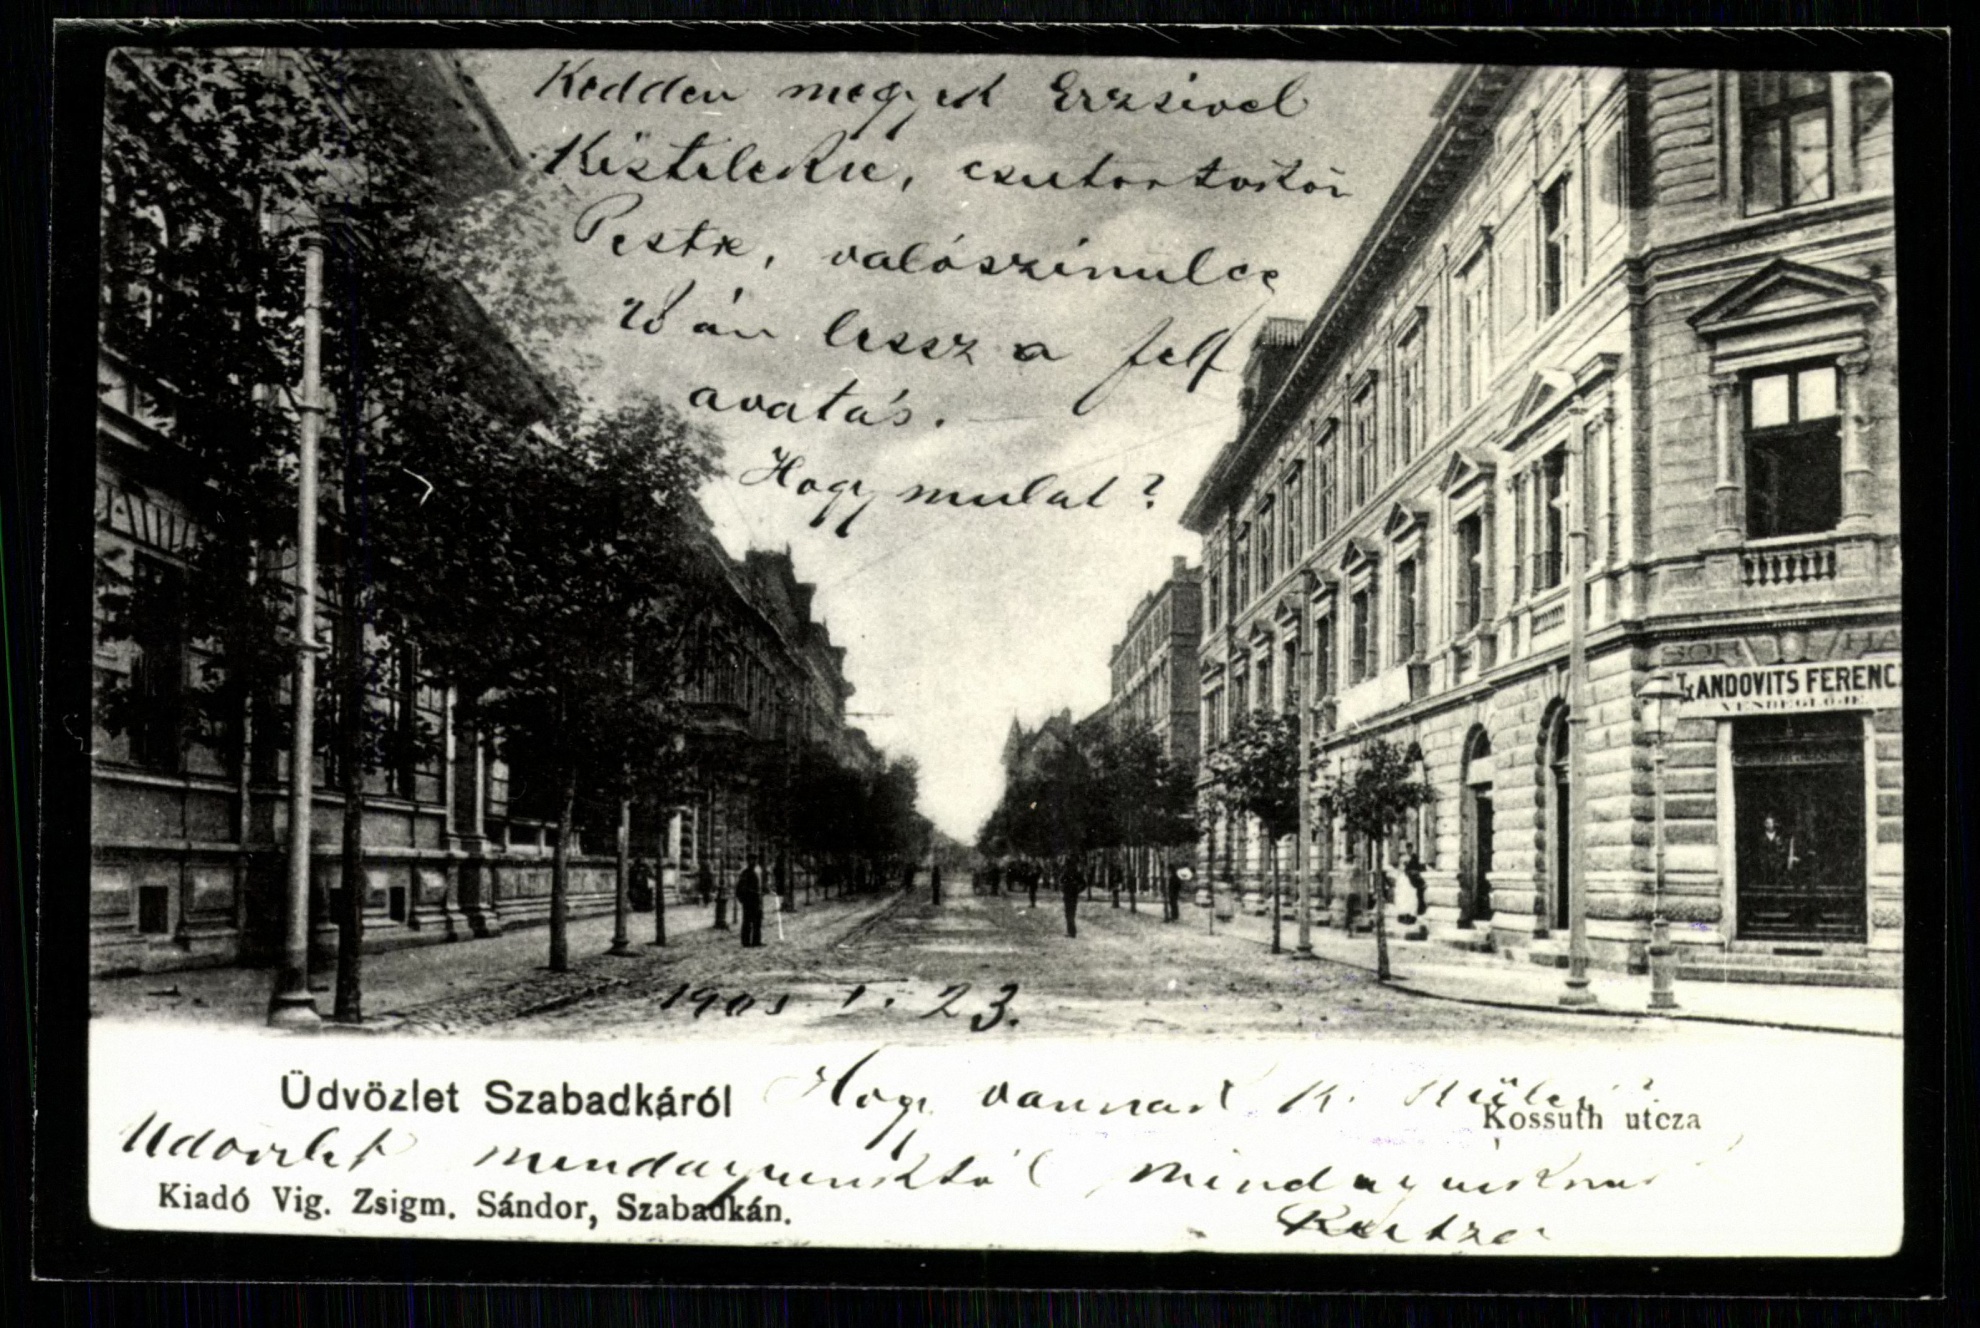 Szabadka; Kossuth utca (Magyar Kereskedelmi és Vendéglátóipari Múzeum CC BY-NC-ND)